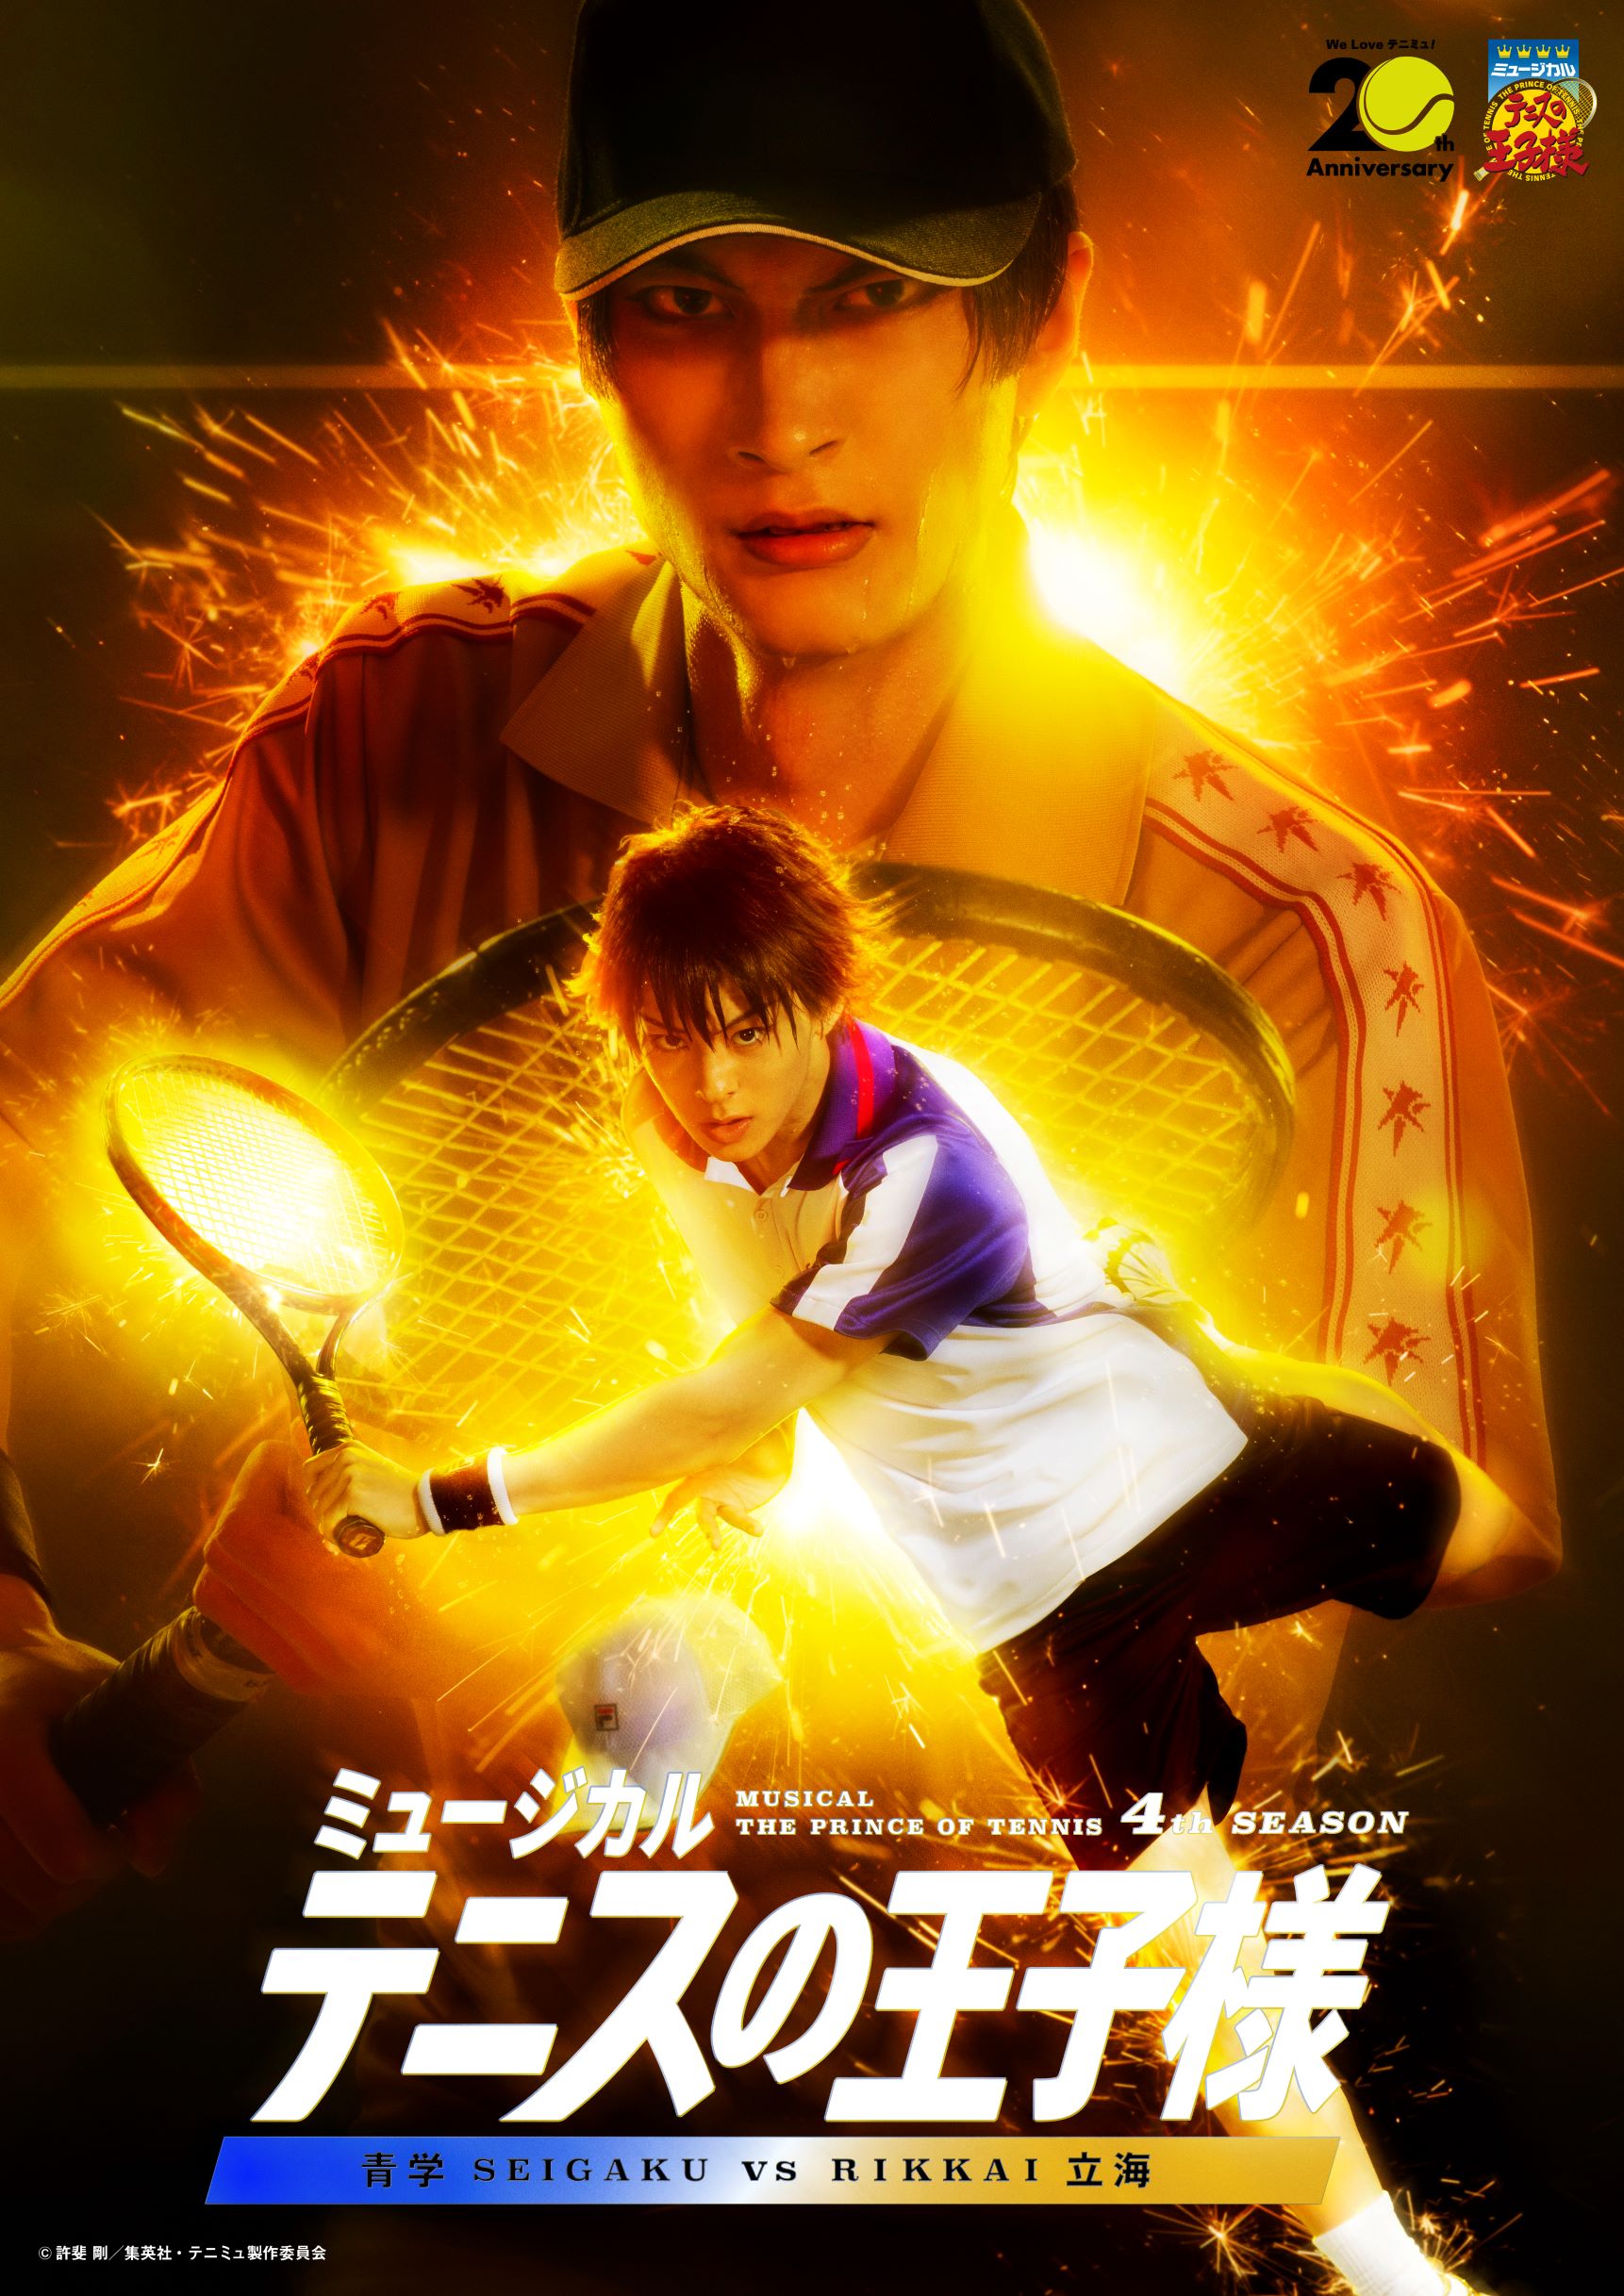 中京テレビクリエイション TICKET ONLINE│ミュージカル『テニスの王子 